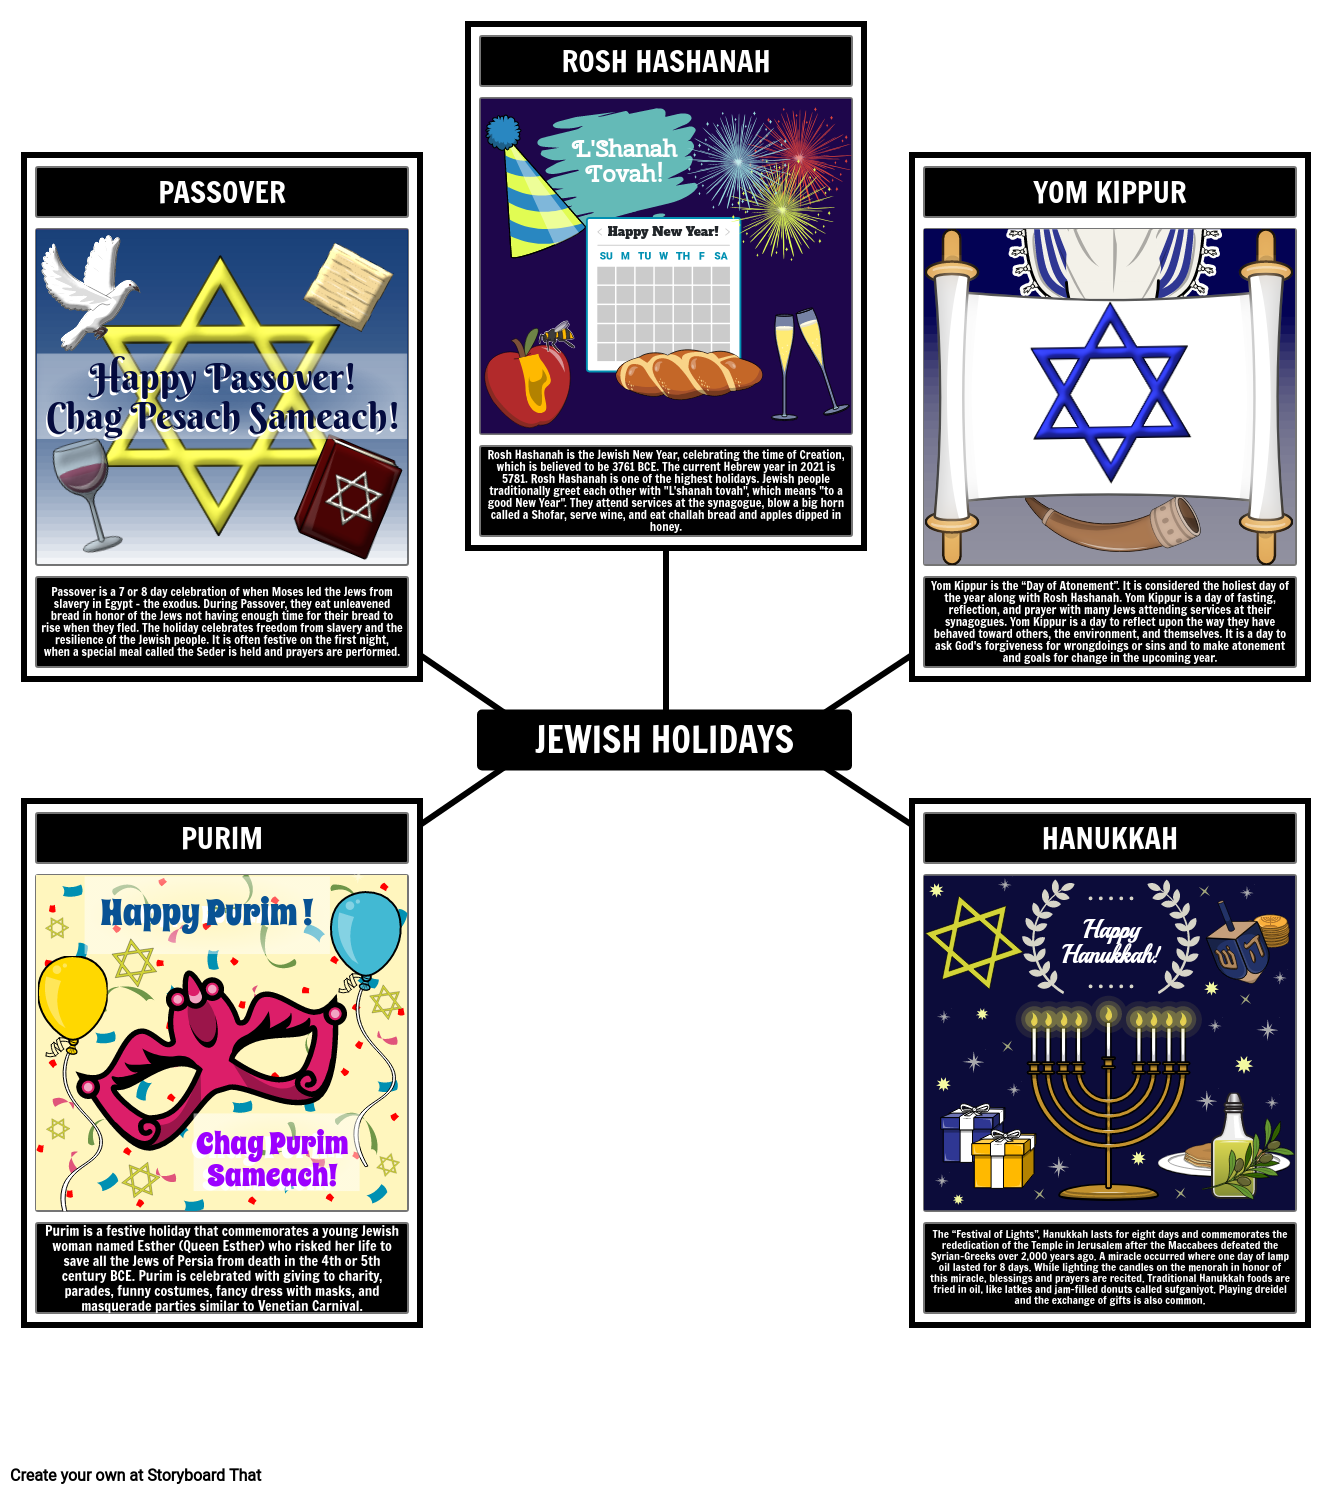 Describing Jewish Holidays Spider Map